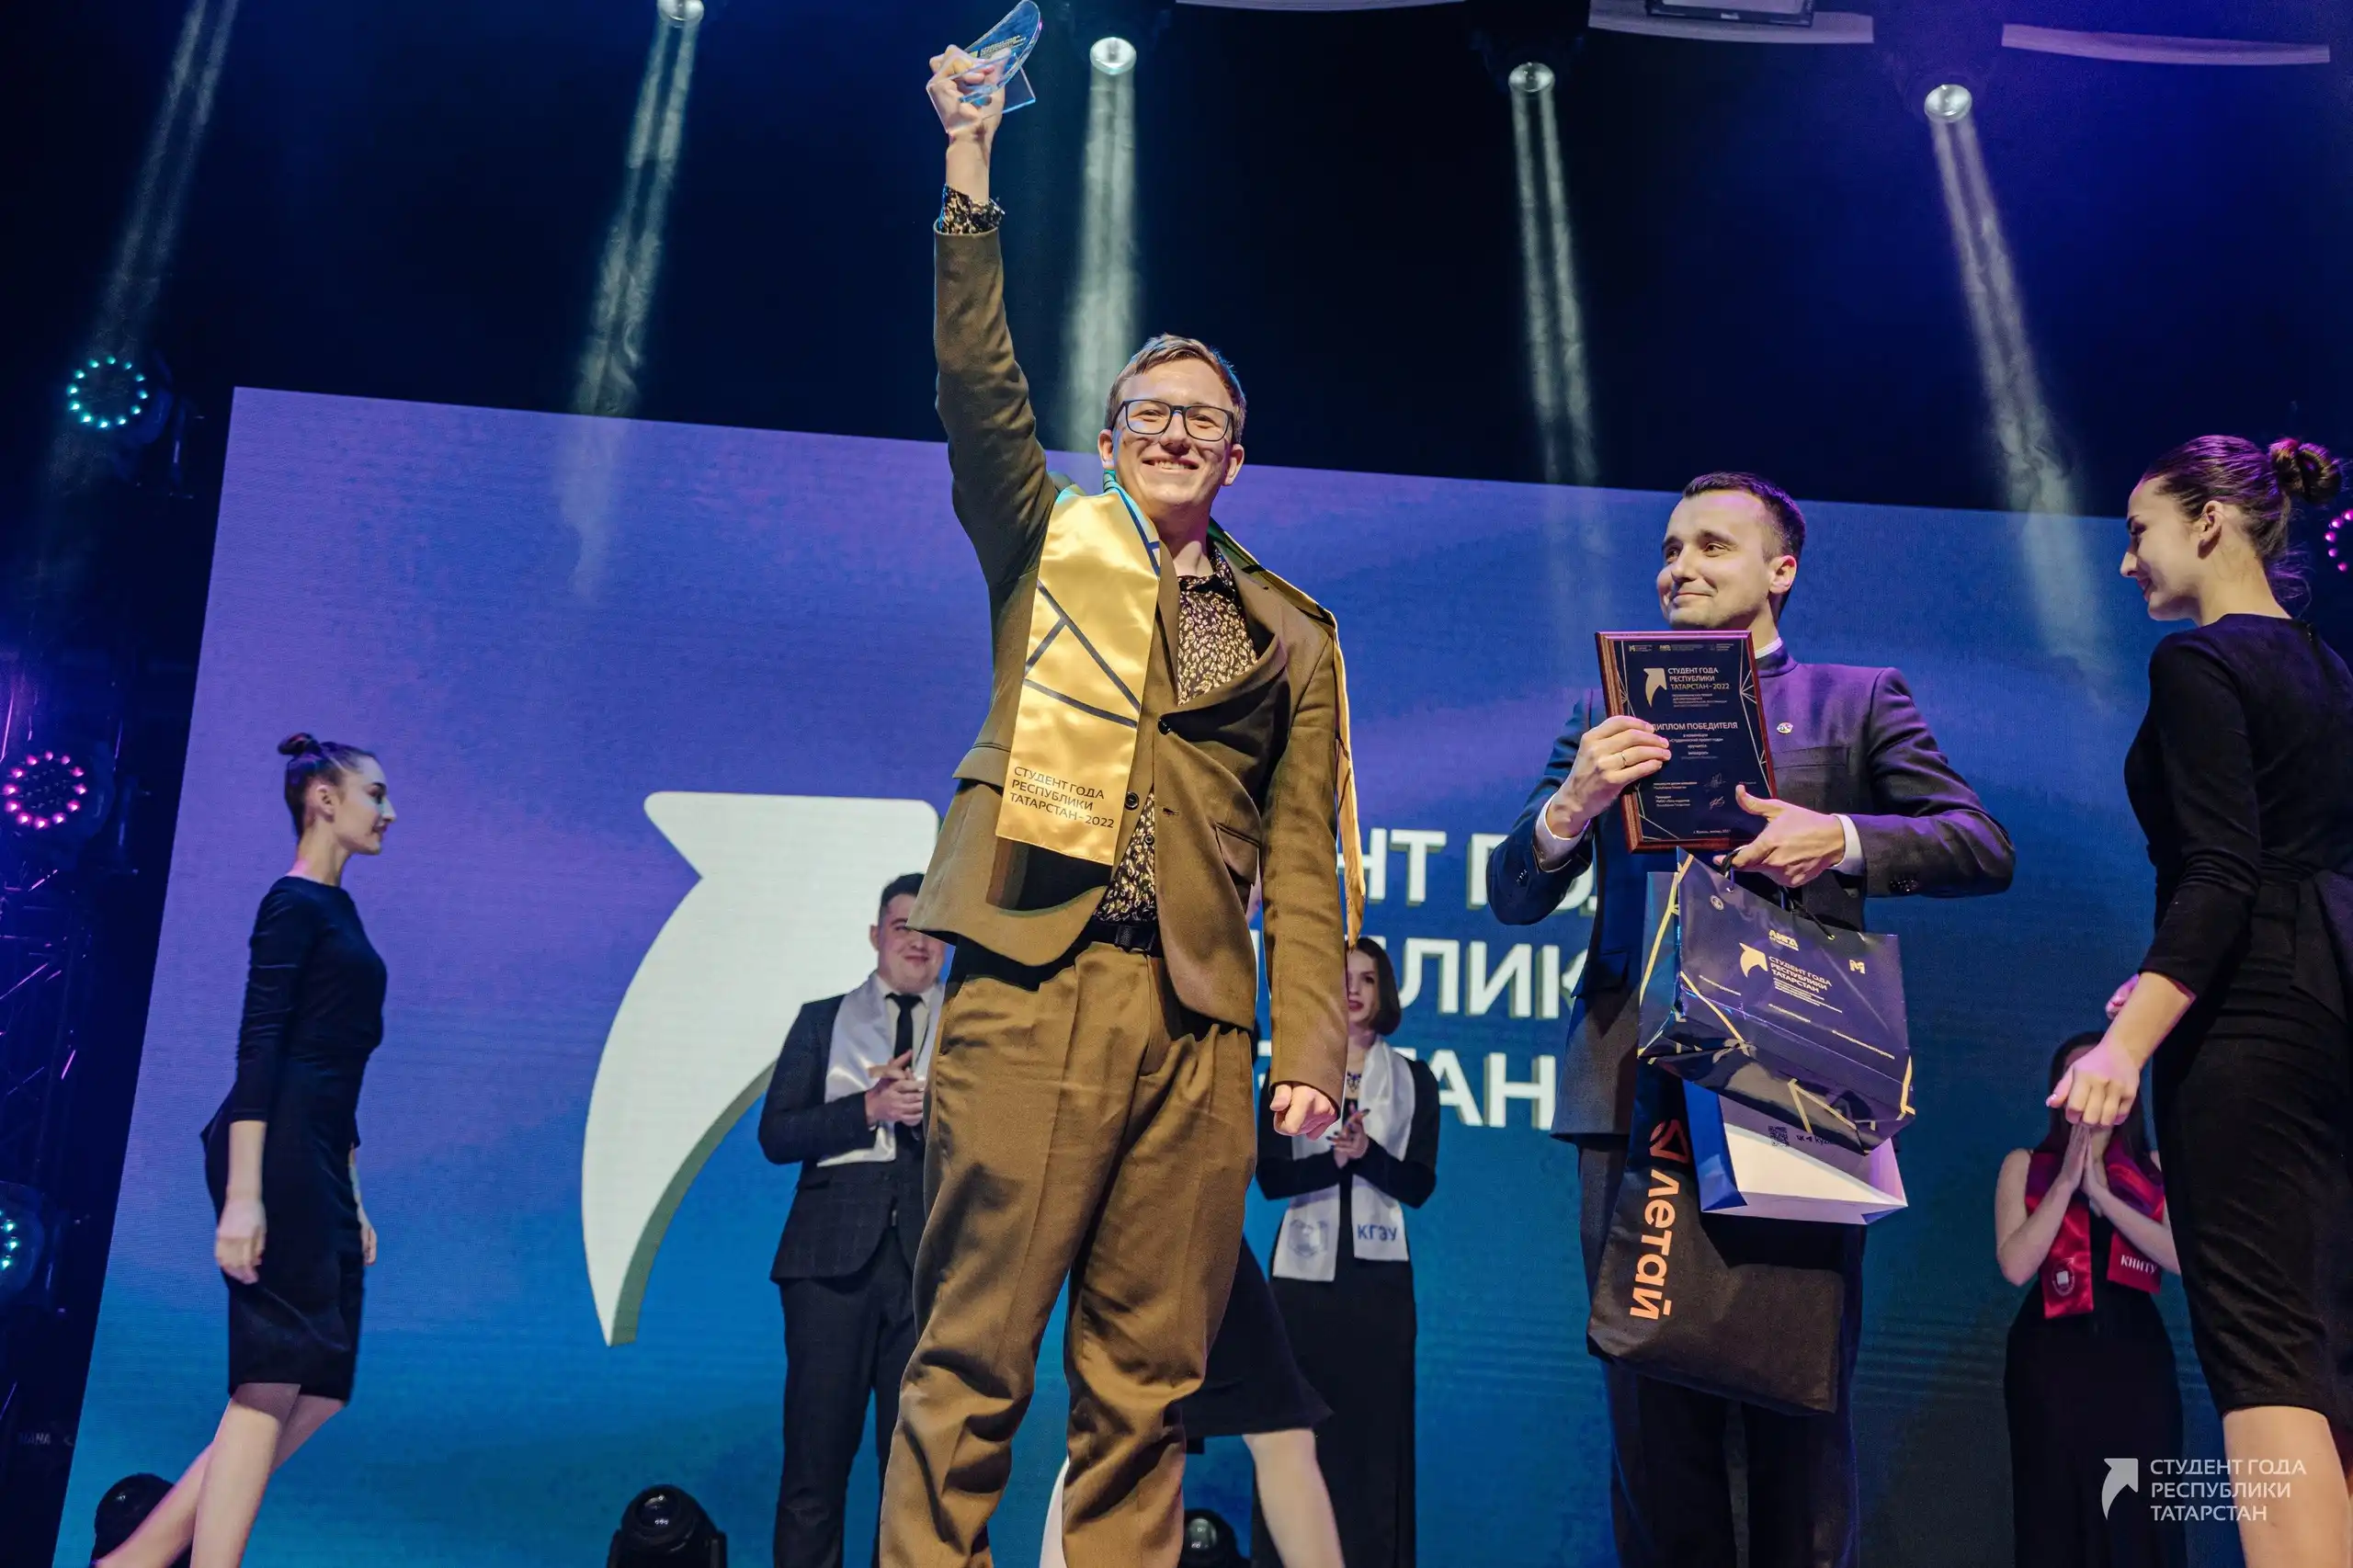 Победитель номинации в премии и конкурса Студент года Лиги студентов Республики Татарстан региональной молодежной общественной организации, крупнейшем студенческом объединении Поволжья, основанной в 1996 году